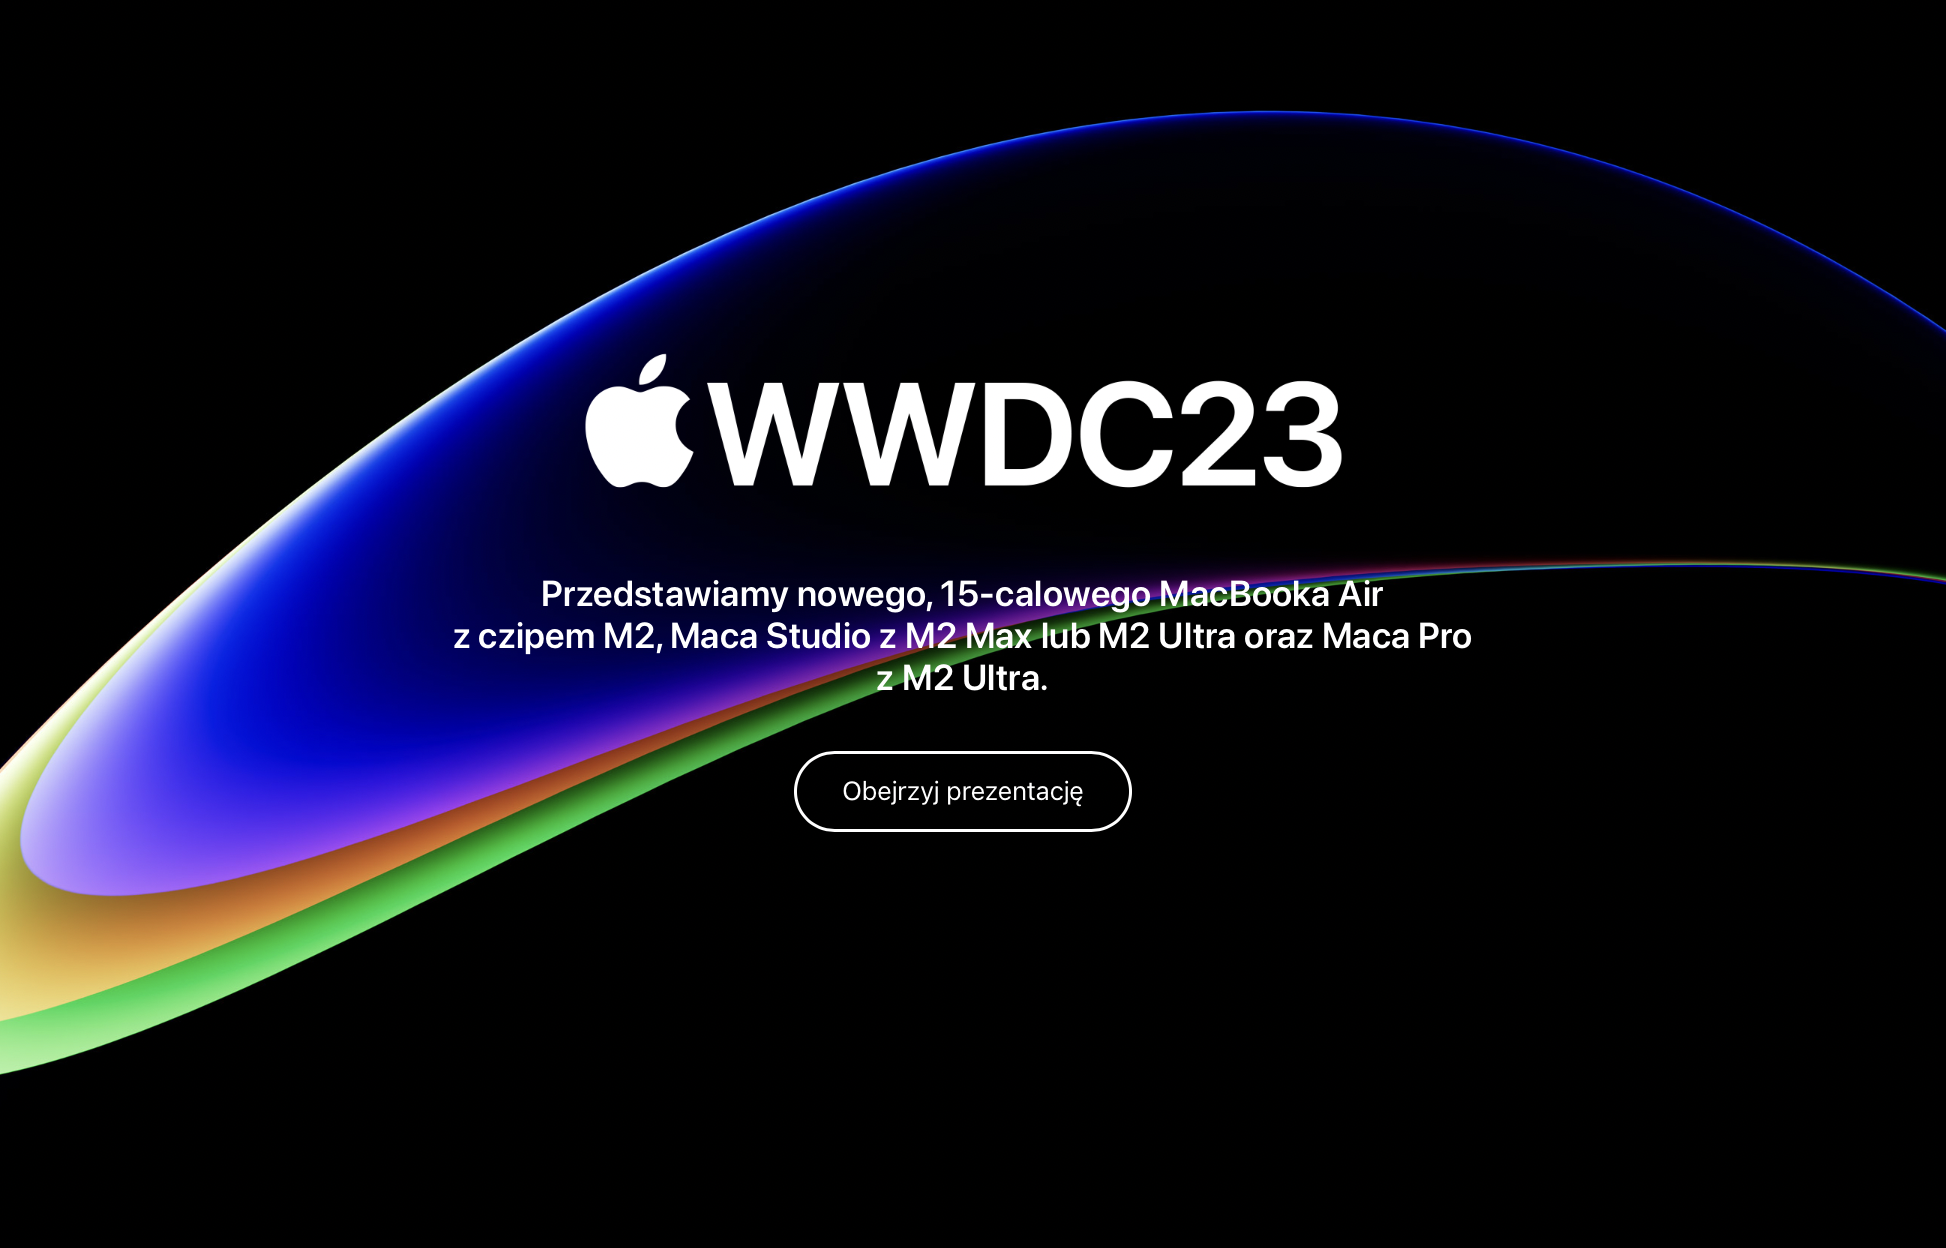 Hełm rzeczywistości mieszanej i najpotężniejsze komputery – Co firma Apple pokazała na swojej prezentacji WWDC23?